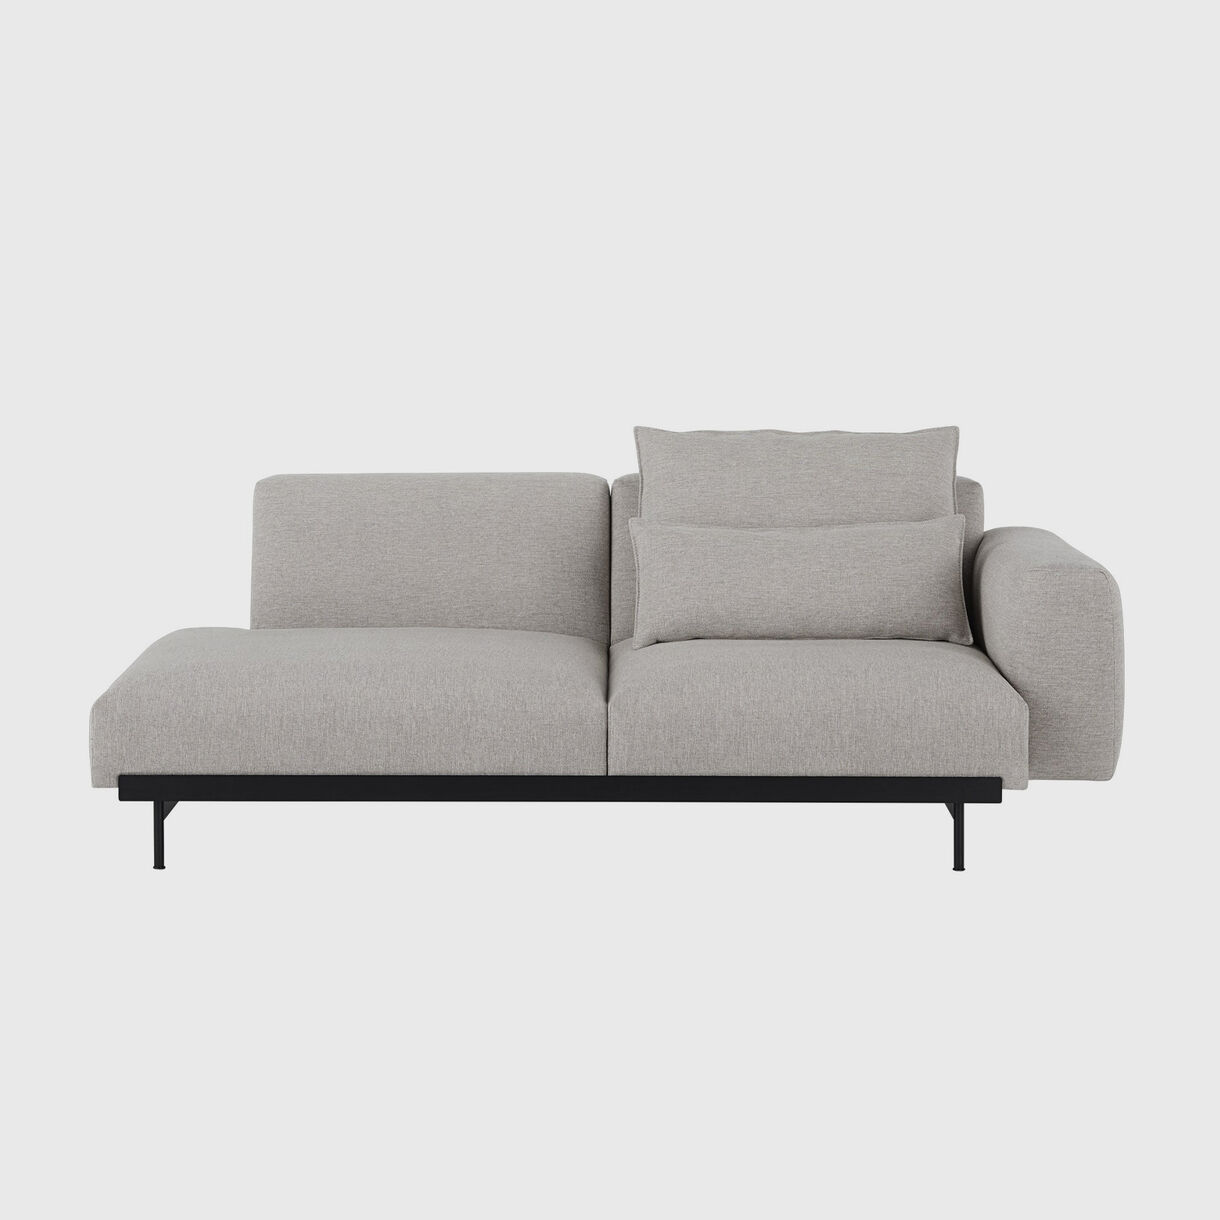 In Situ 2 Seater Sofa, Configuration 2, Clay 12